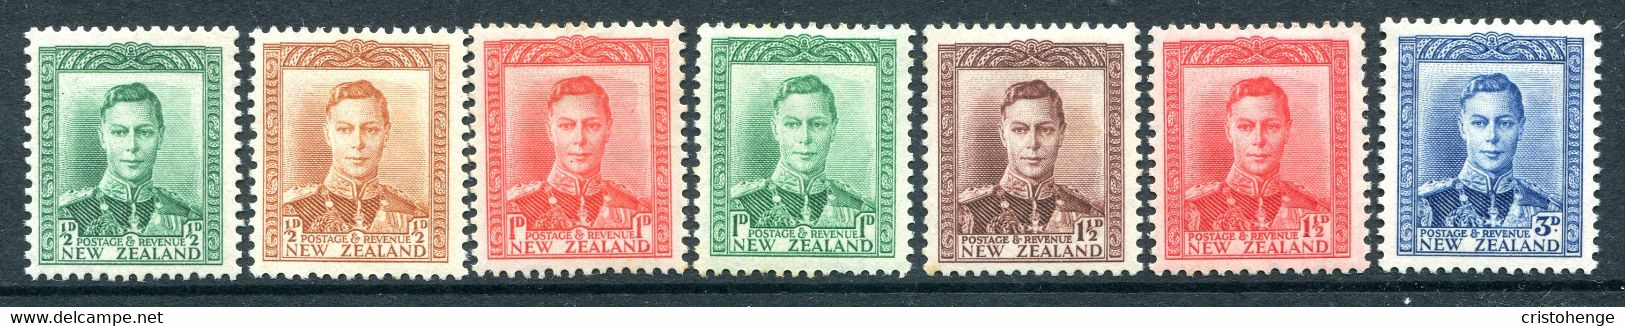 New Zealand 1938-44 King George VI Definitives Set HM (SG 603-609) - Unused Stamps